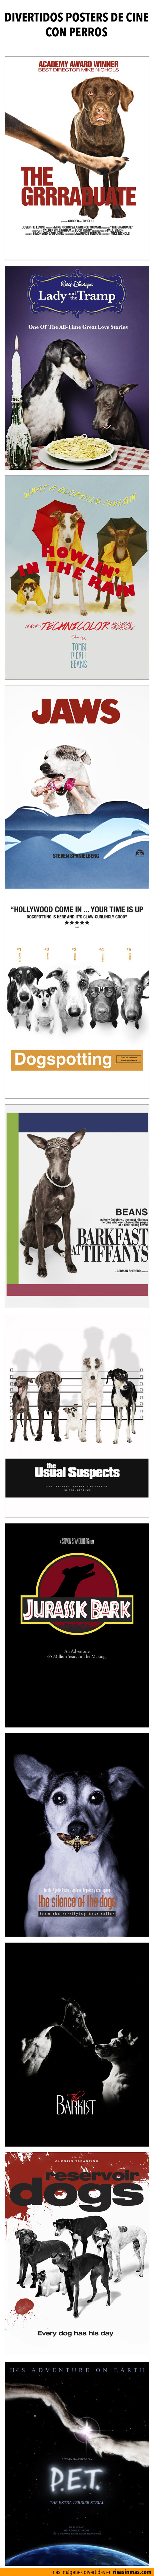 Divertidos posters de cine con perros